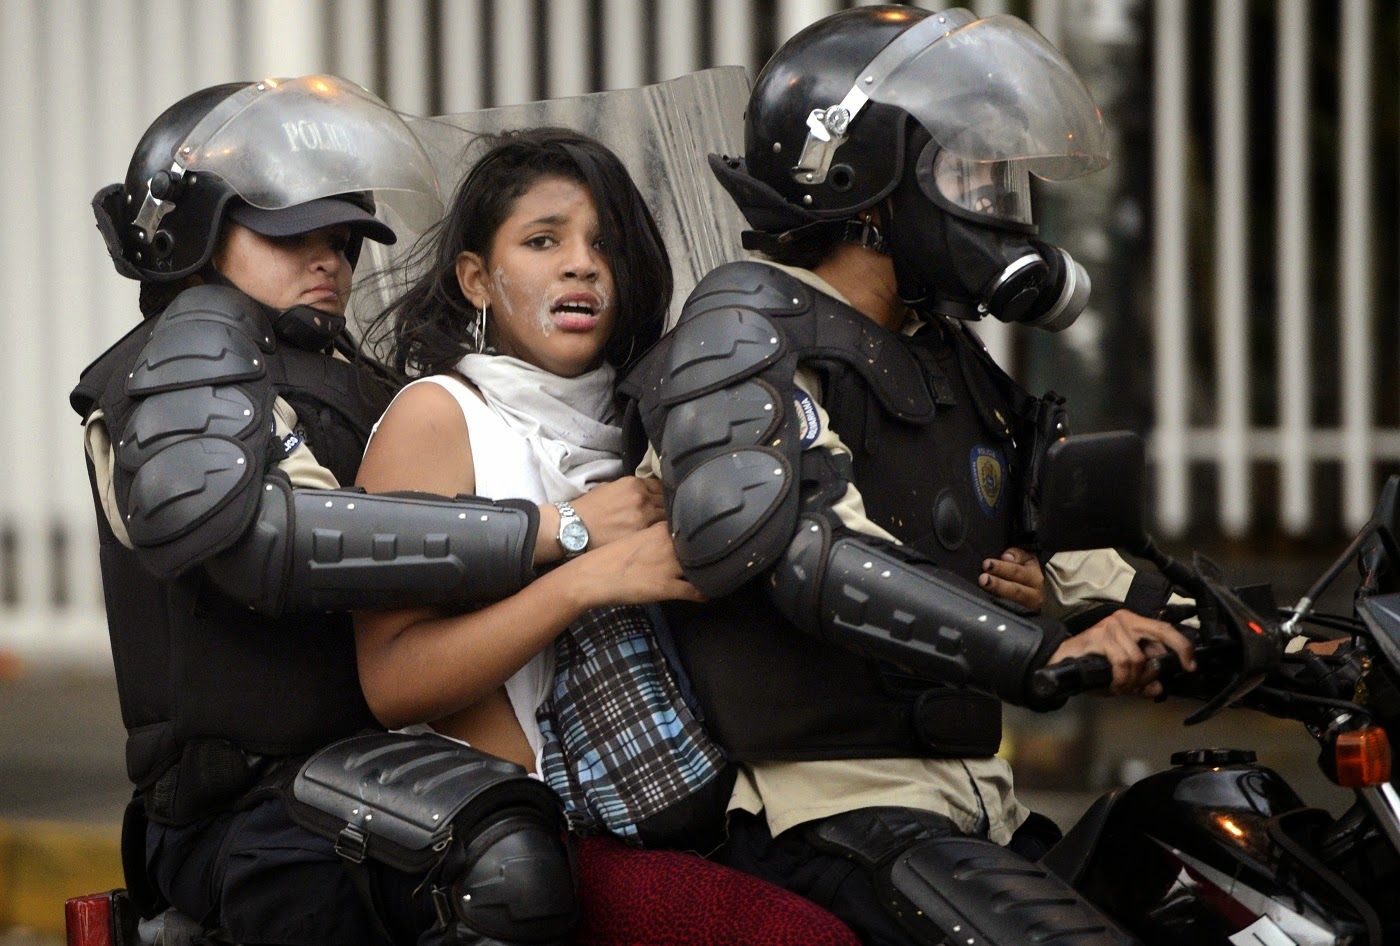 Análisis: ¿Por qué la izquierda global ignora la brutalidad policial de Nicolás Maduro?